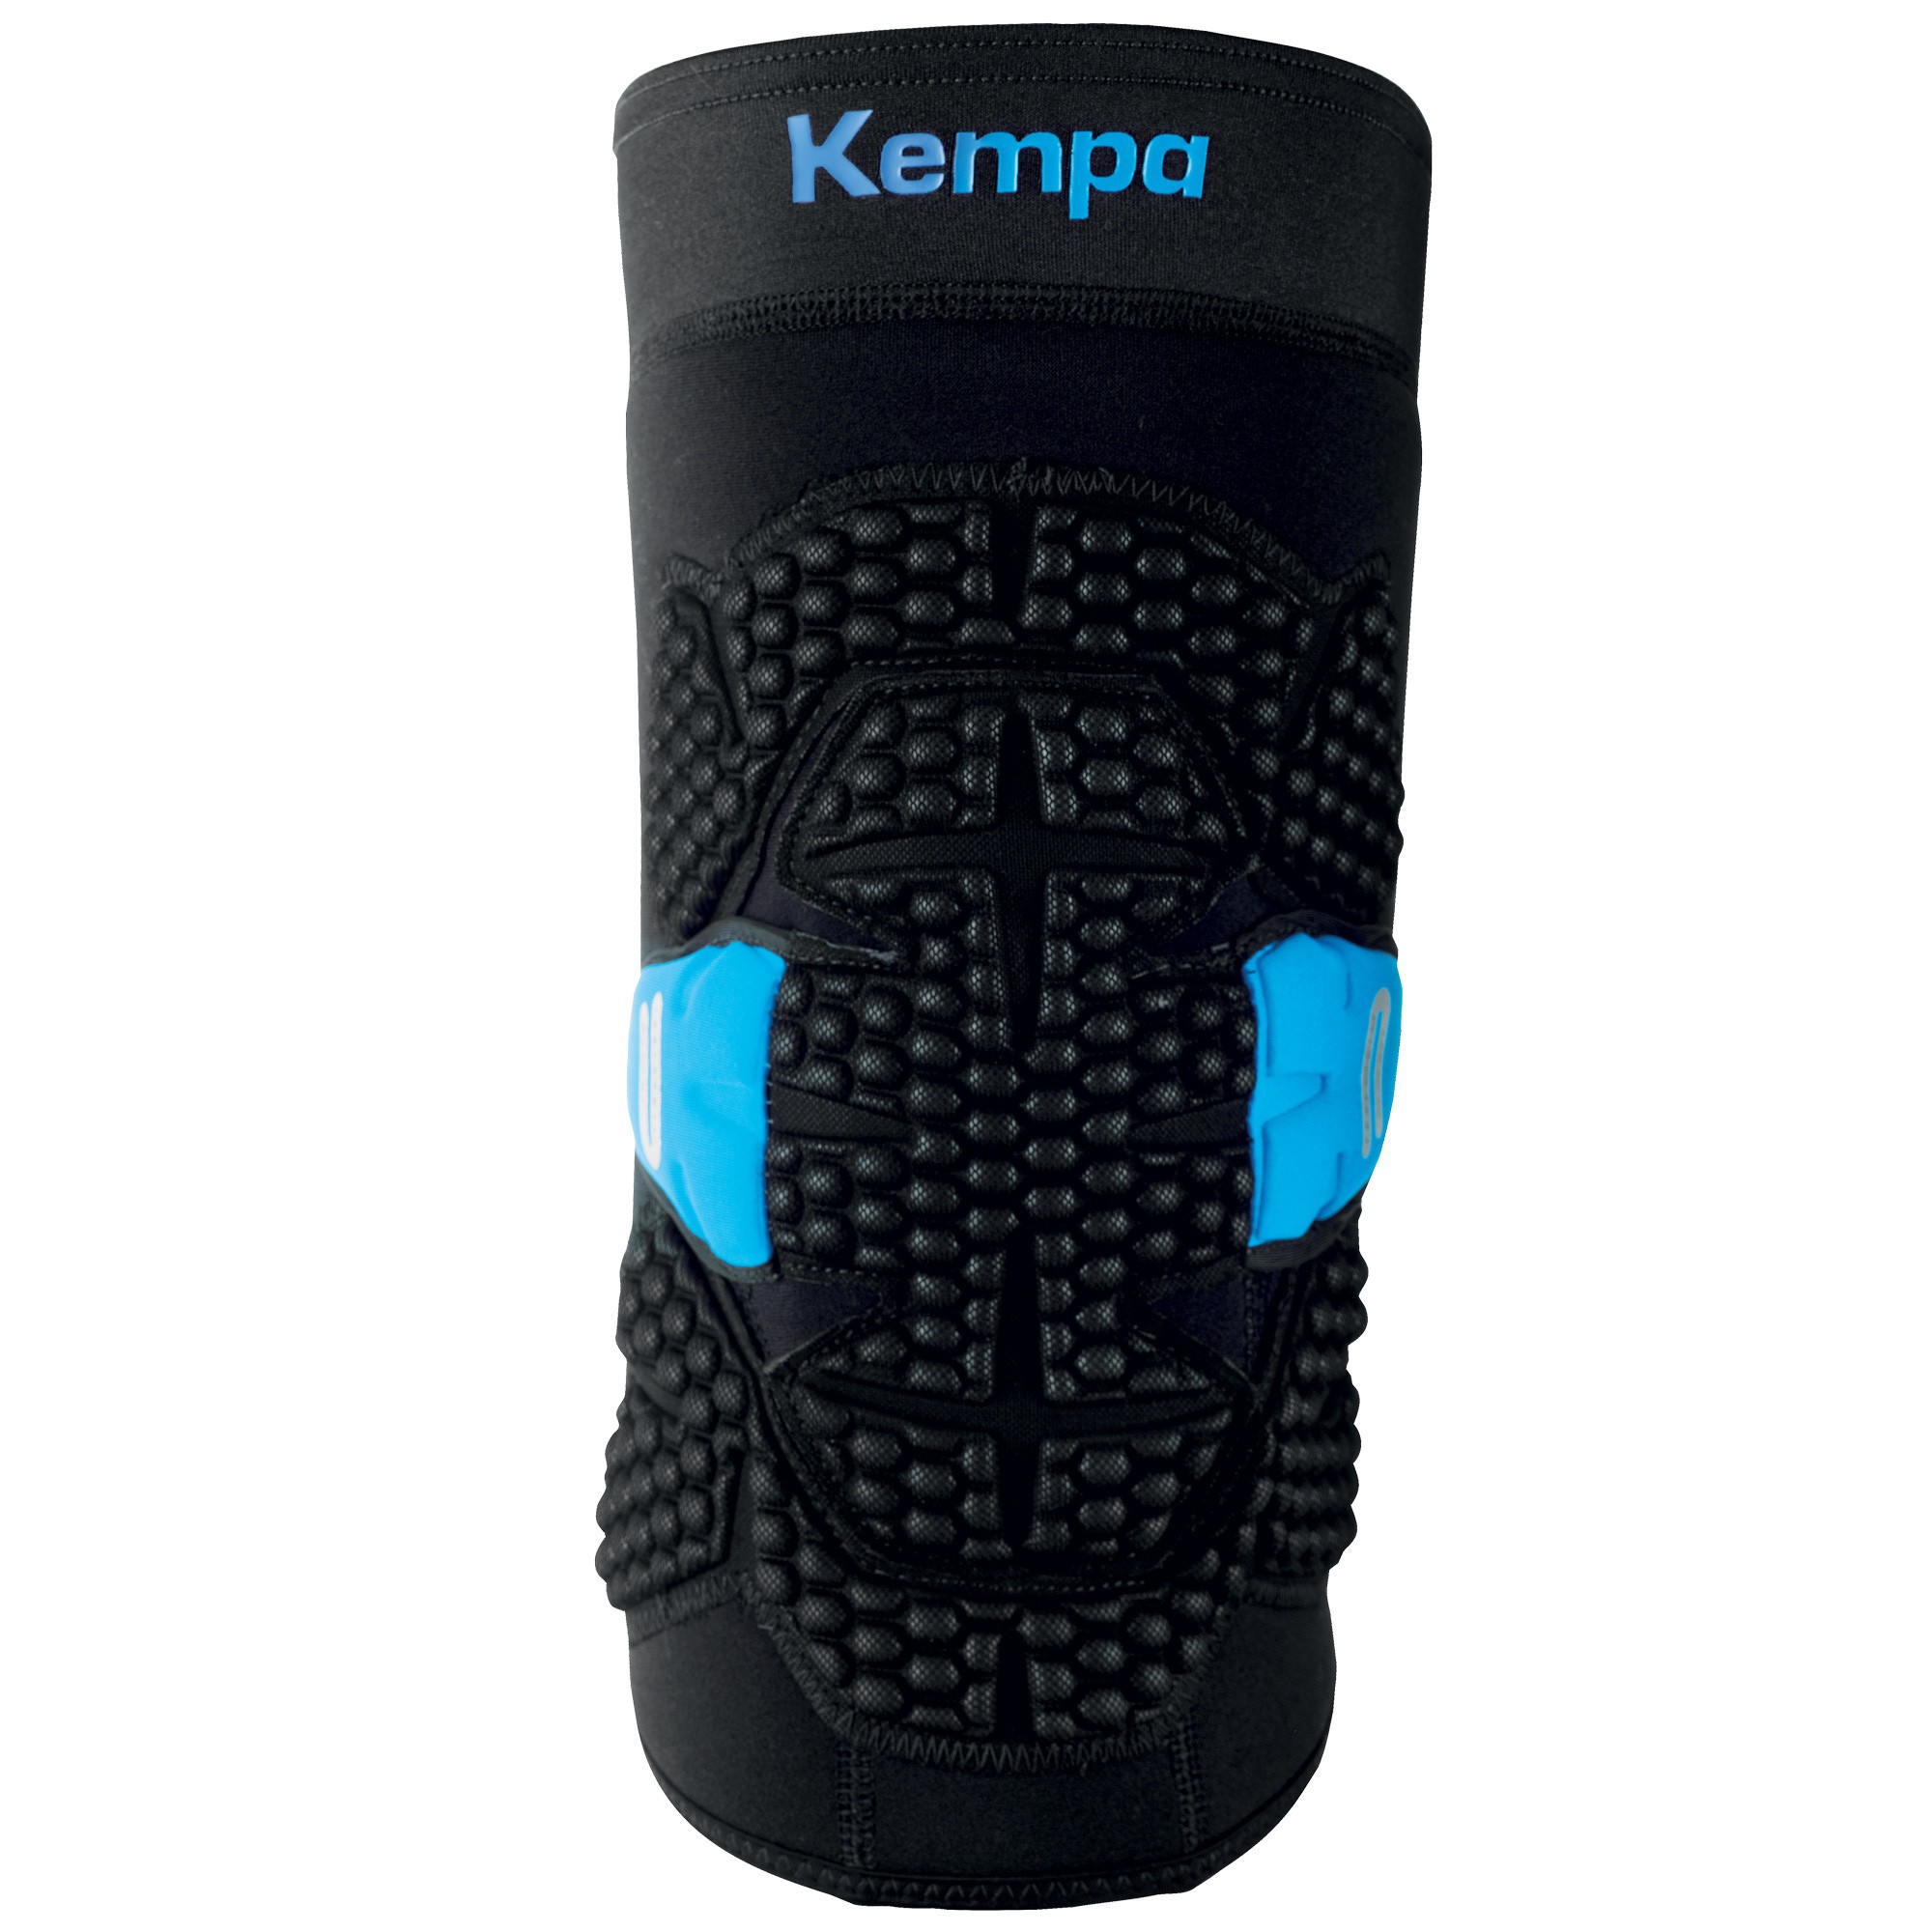 Manchon de protection de Handball Kempa